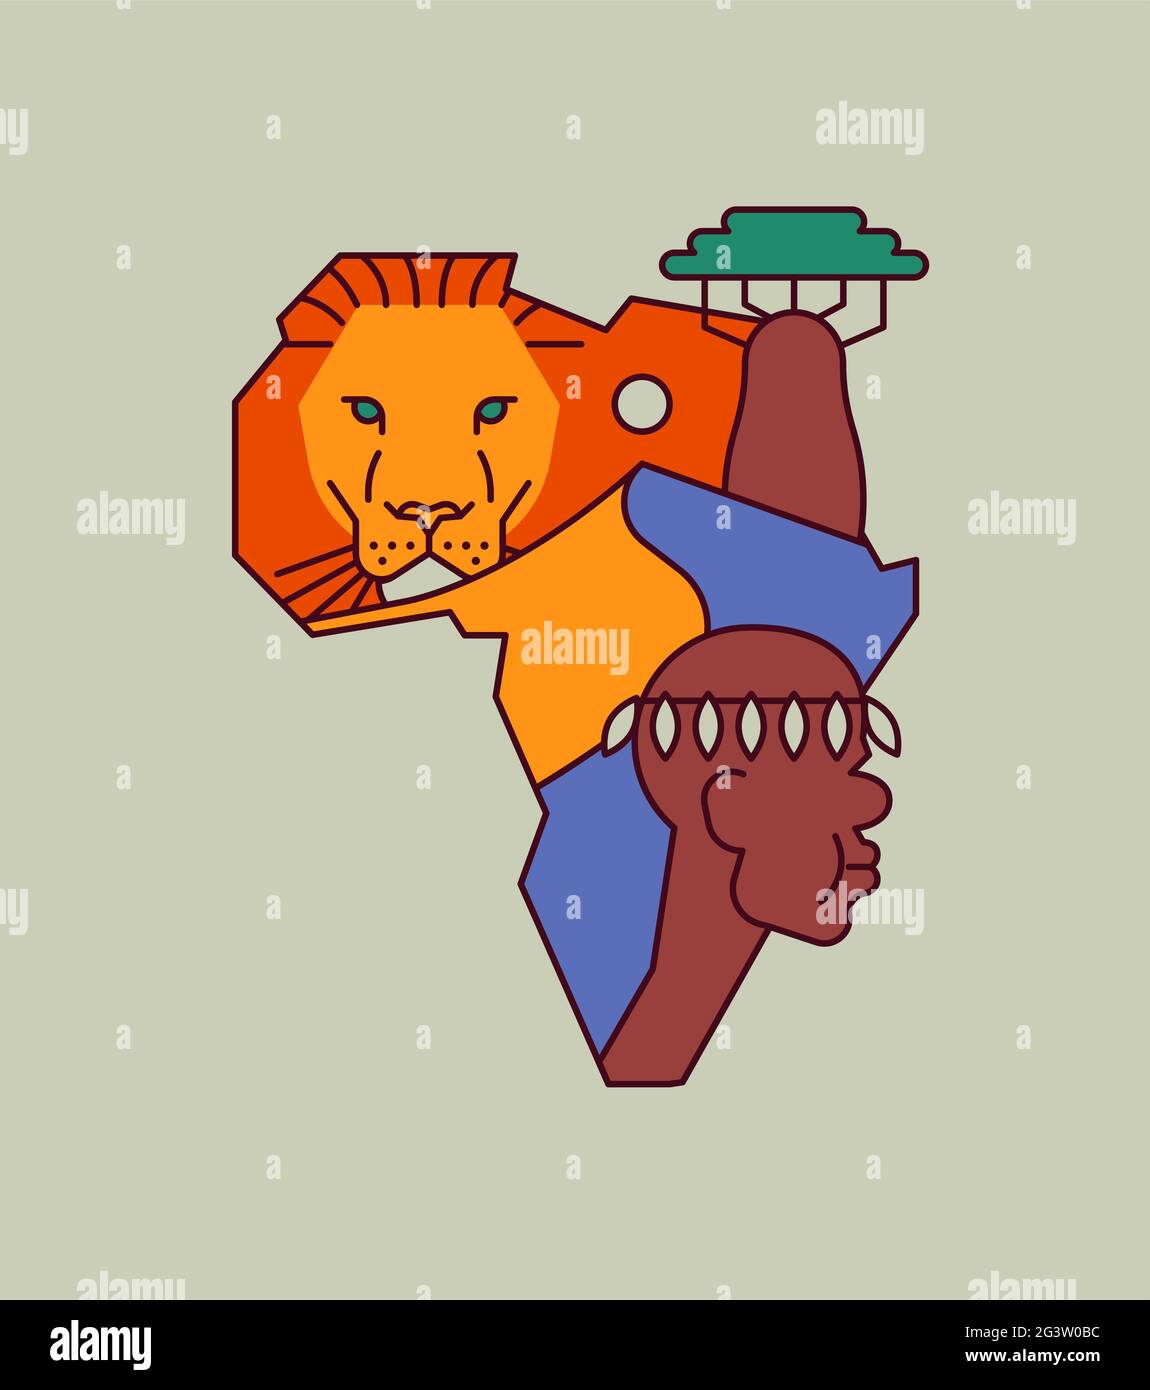 Africa continente illustrazione concetto di cultura tradizionale africana decorazione in forma di mappa. Moderno stile cartone animato a forma piatta. Include deser del sahara Illustrazione Vettoriale